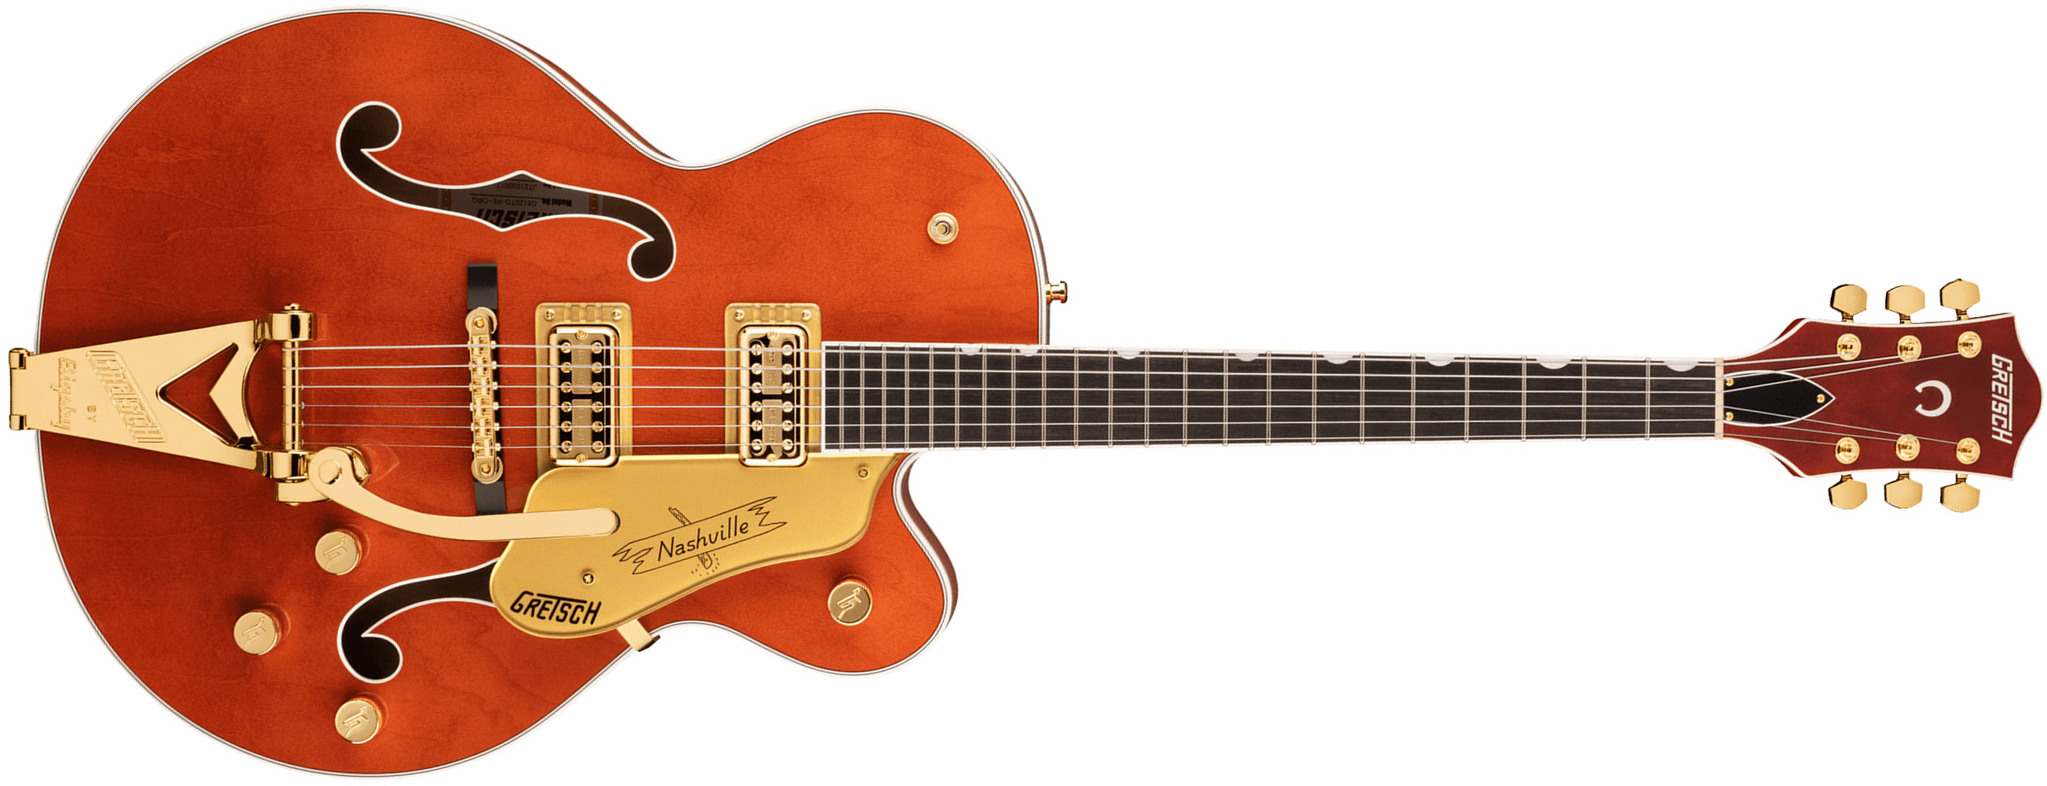 Gretsch G6120tg Players Edition Nashville Pro Jap Bigsby Eb - Orange Stain - Hollow bodytock elektrische gitaar - Main picture